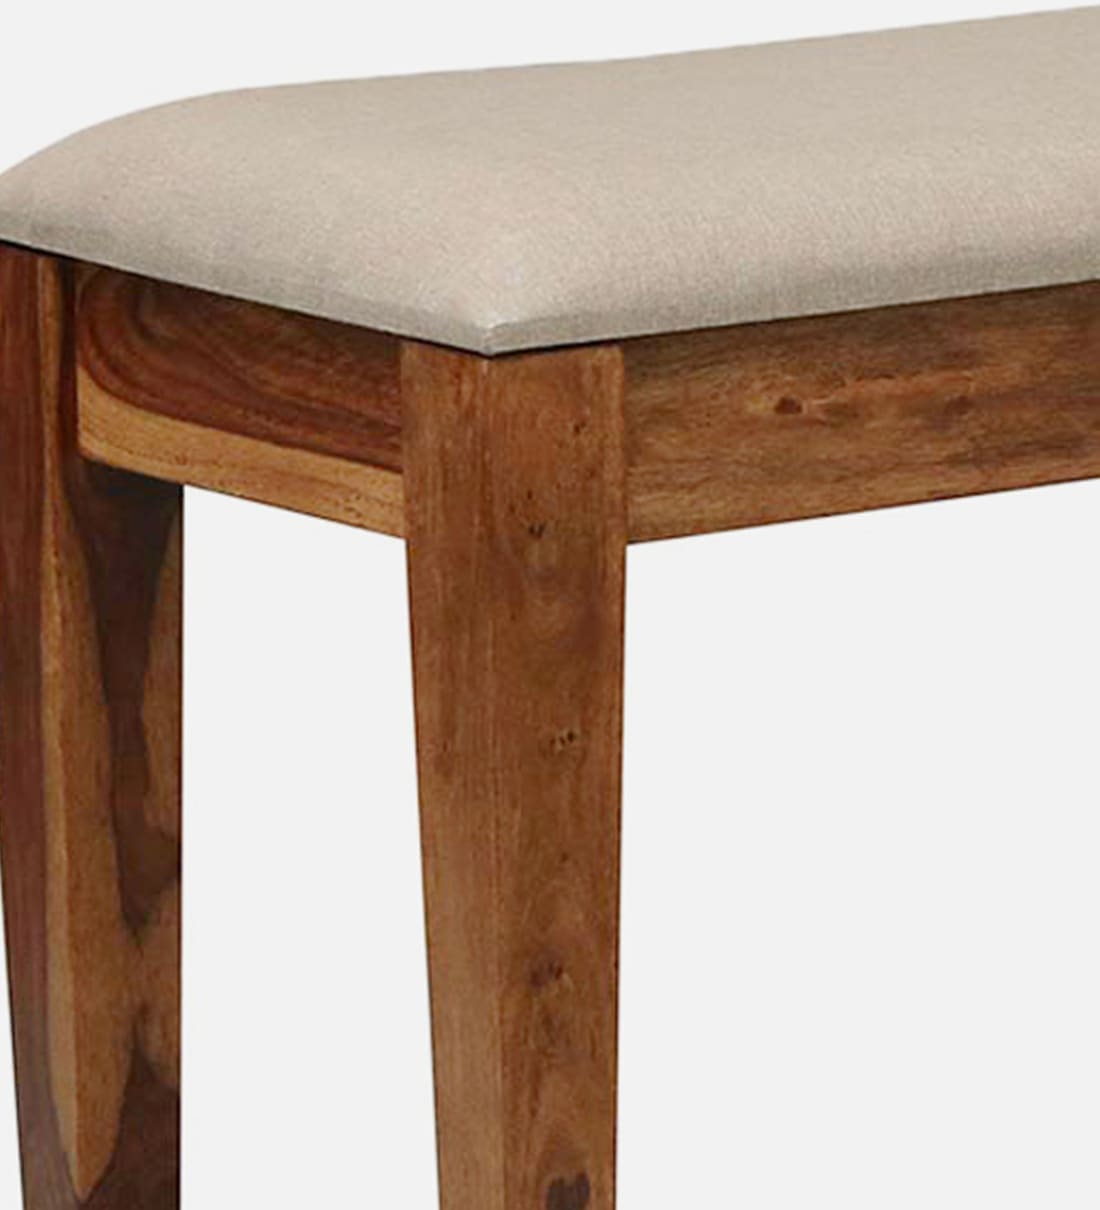 Kentan Sheesham Wood 6 Seater Dining Set In Rustic Teak With Bench,